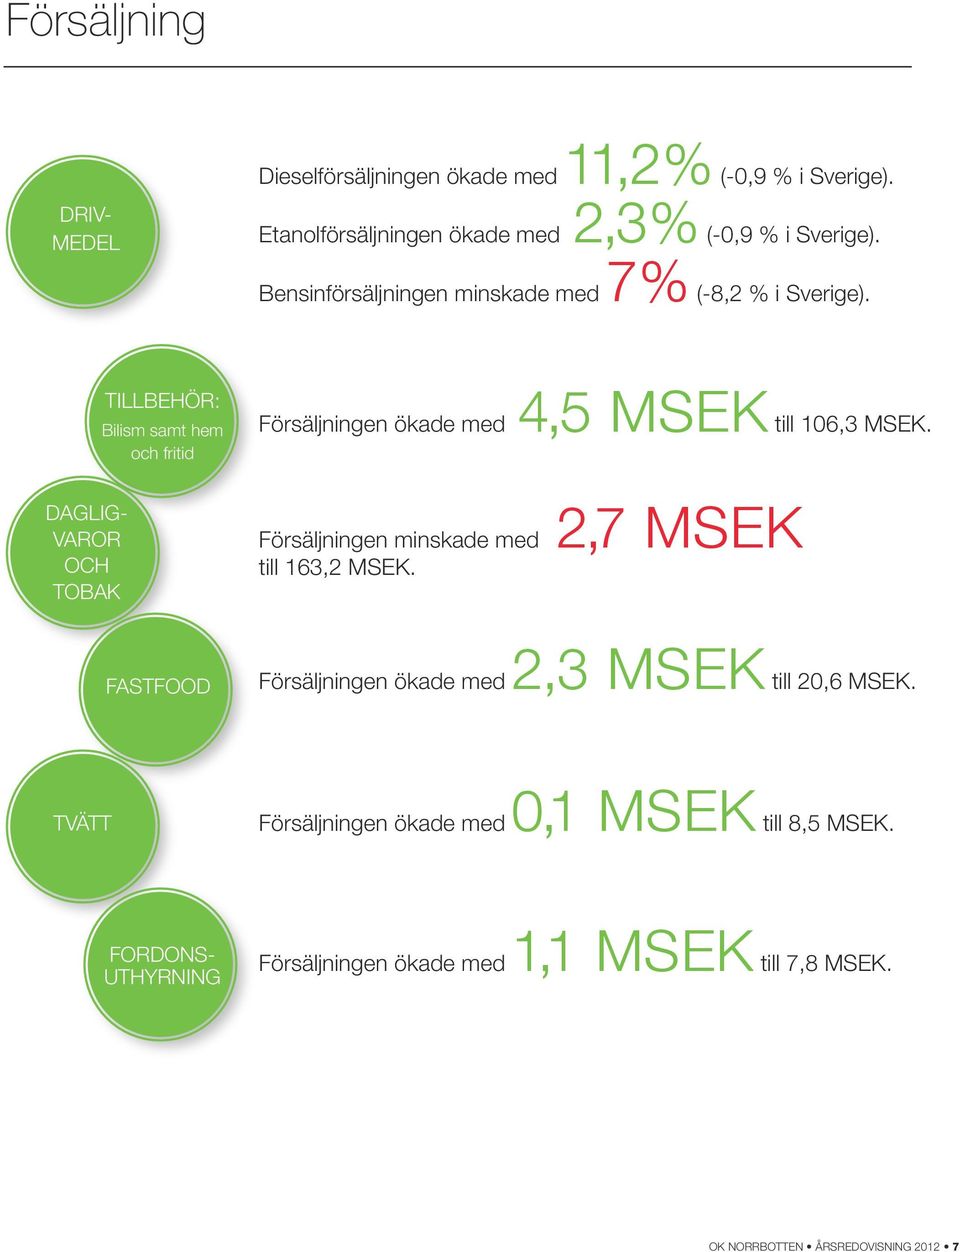 Dagligvaror och tobak Tillbehör: Bilism samt hem och fritid FASTFOOD Försäljningen ökade med 4,5 MSEK till 106,3 MSEK.